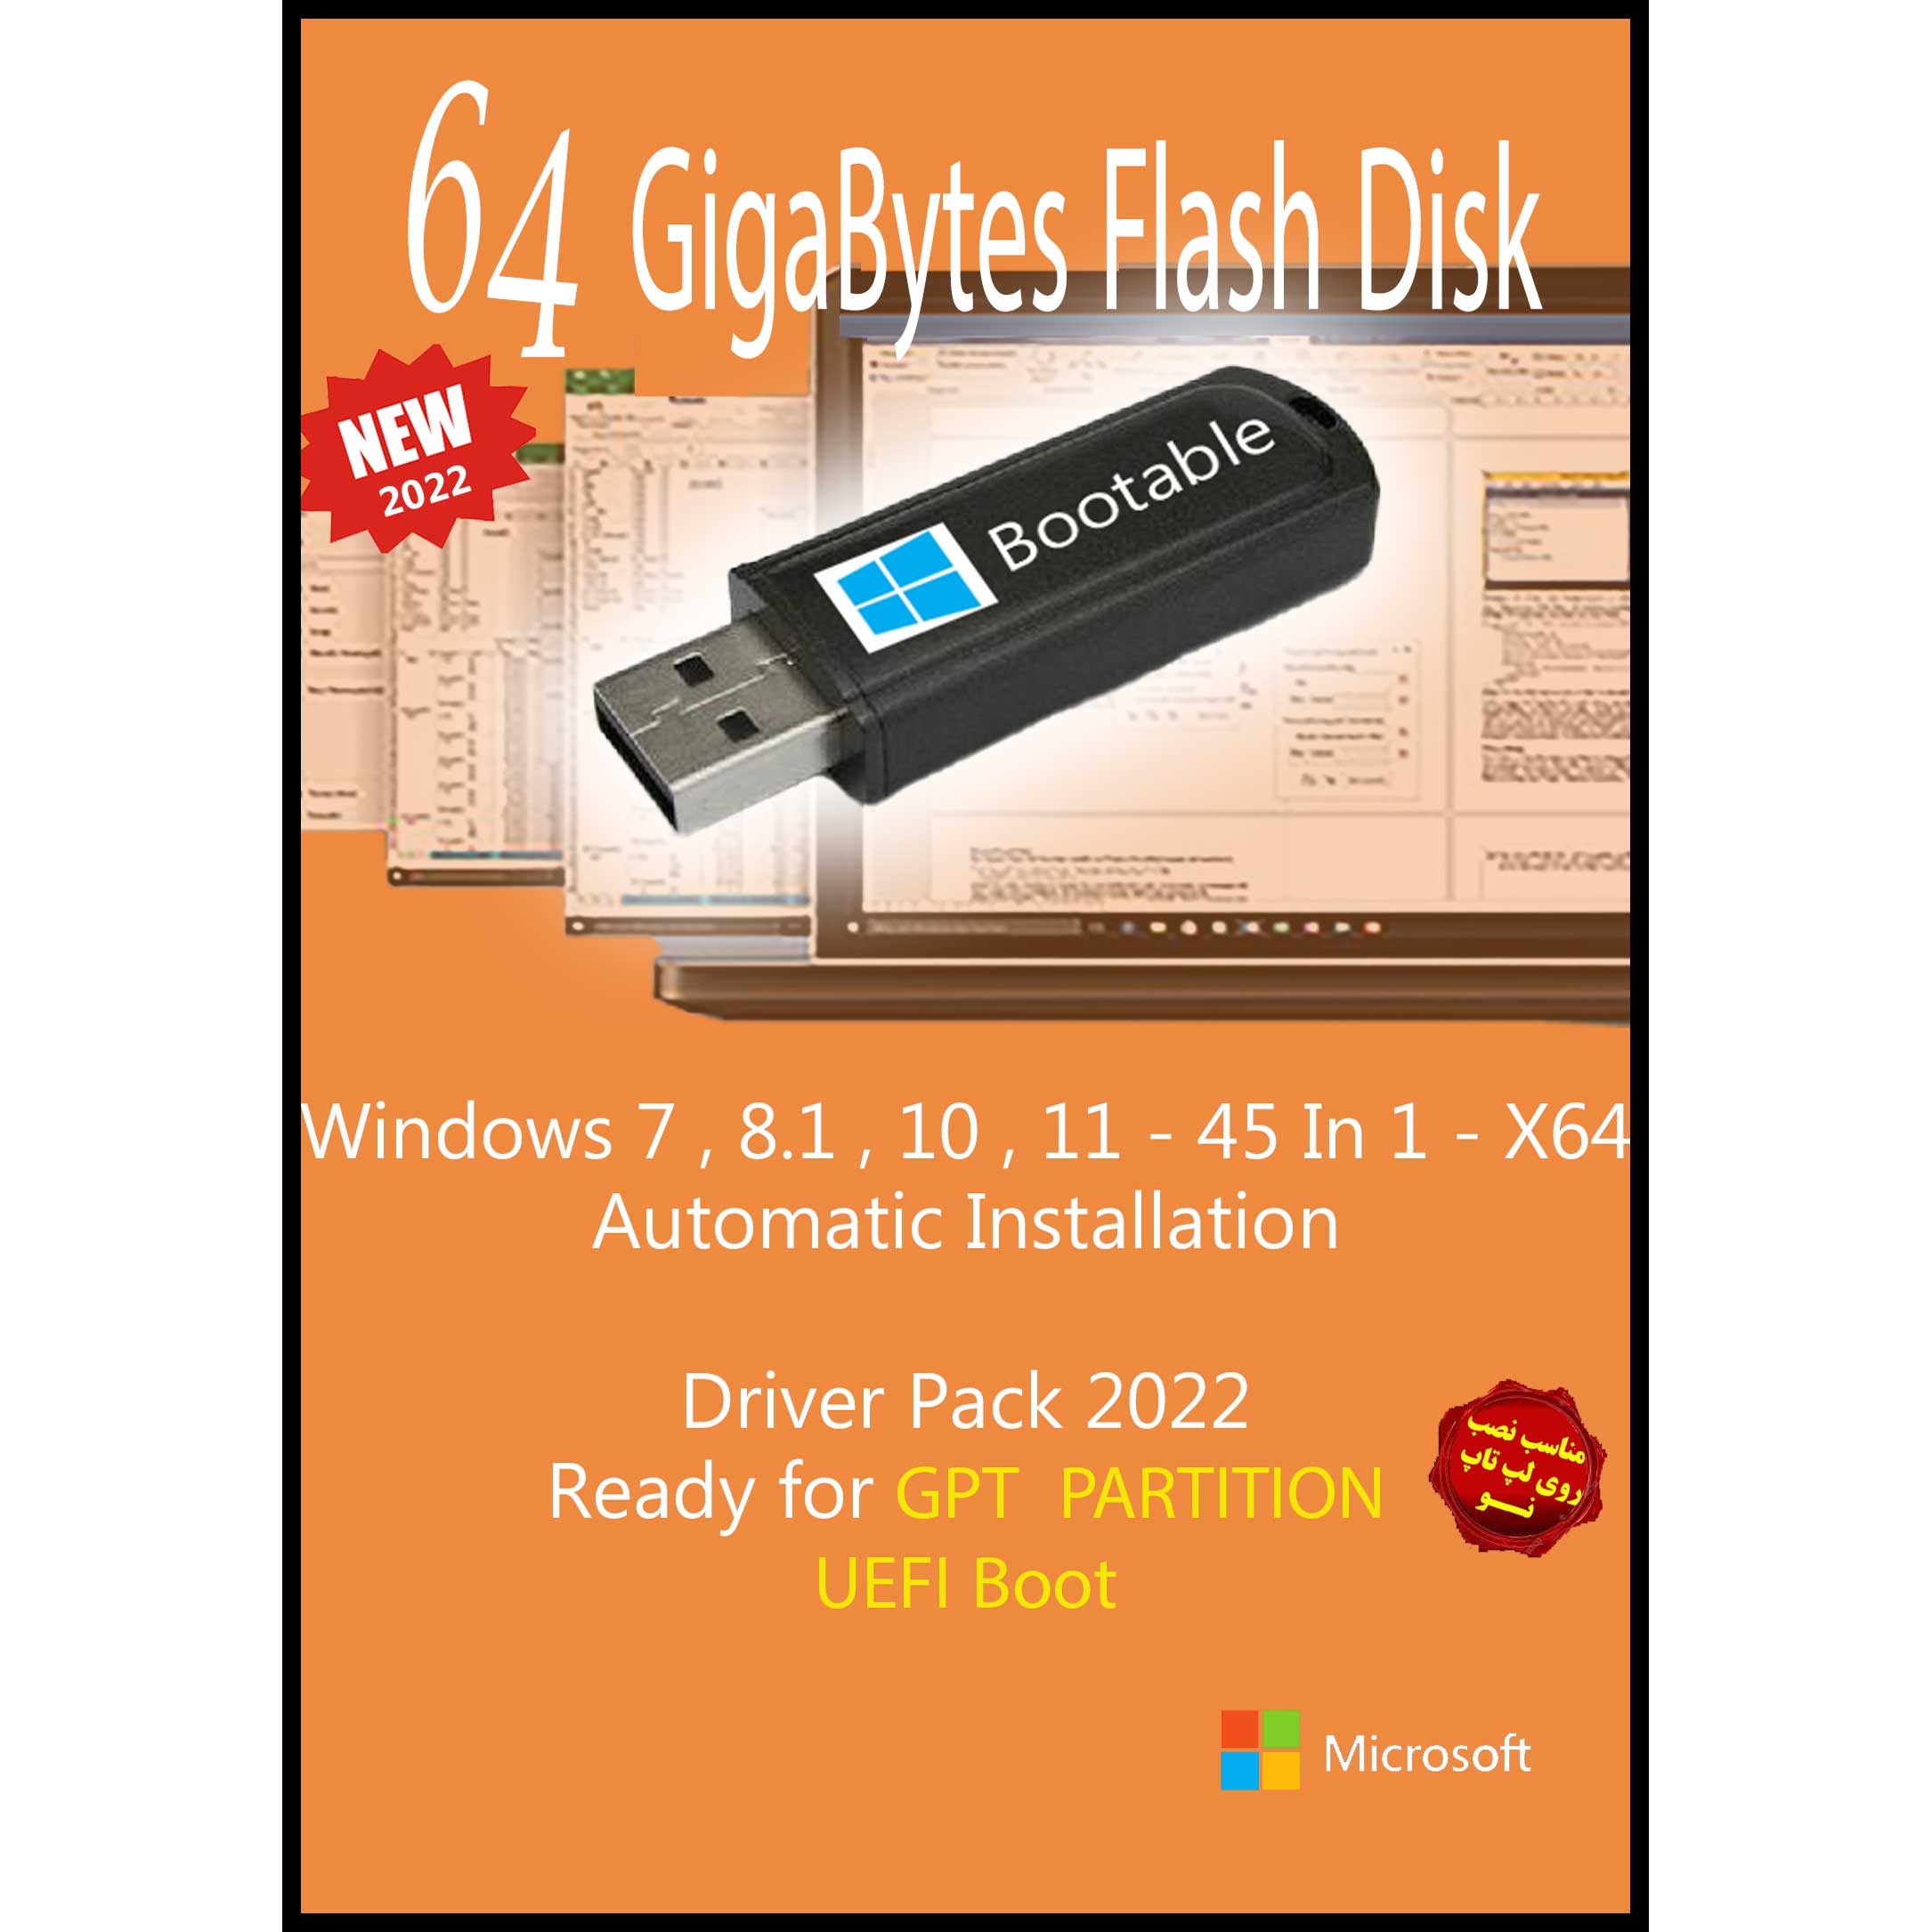 سیستم عامل Windows 7 8.1 10 11 - 45 In 1 - X64 UEFI - Driver Pack 2022 نشر مایکروسافت